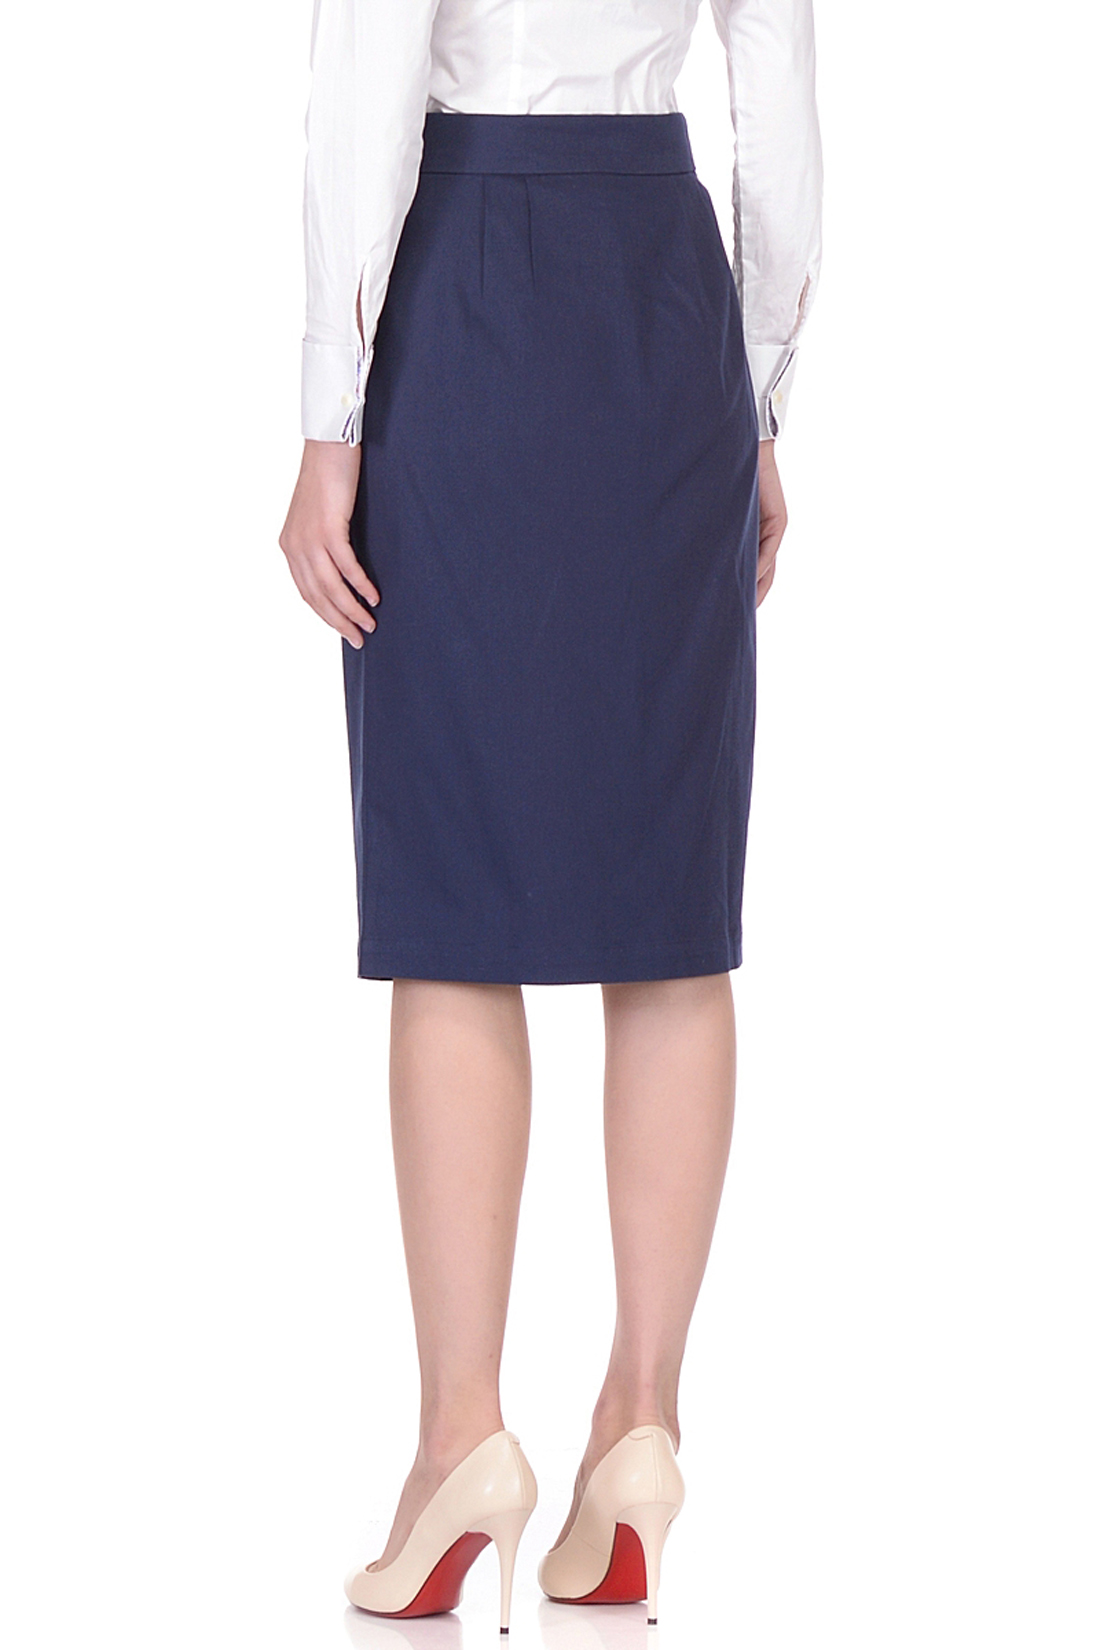 Классическая юбка с пуговицами (арт. baon B478007), размер XXL, цвет синий Классическая юбка с пуговицами (арт. baon B478007) - фото 2